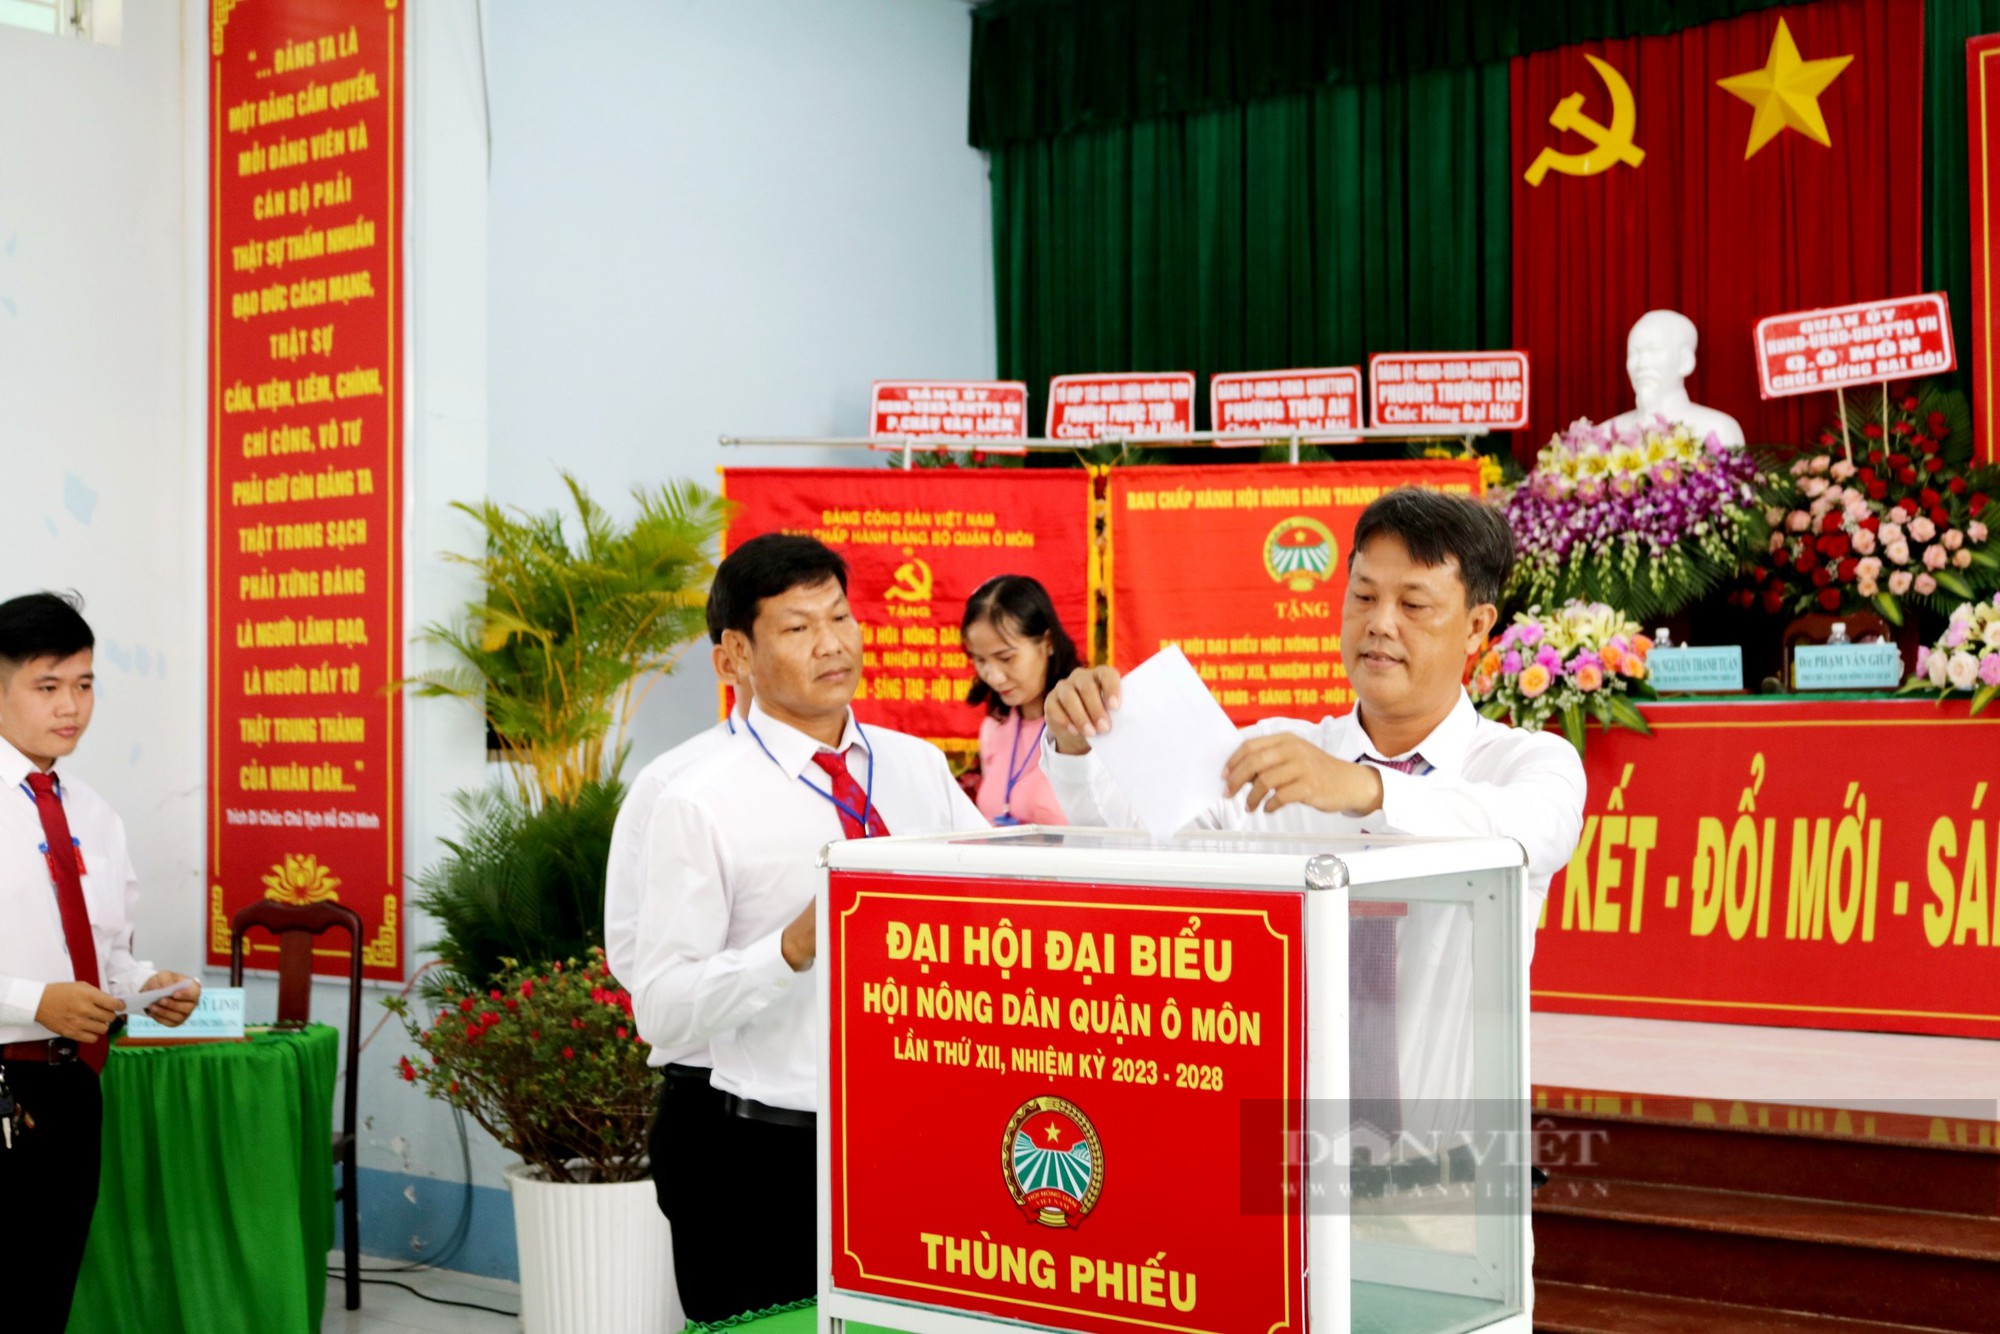 Cần Thơ: Đại hội Hội Nông dân quận Ô Môn, ông Trương Văn Phúc được bầu chức Chủ tịch - Ảnh 4.